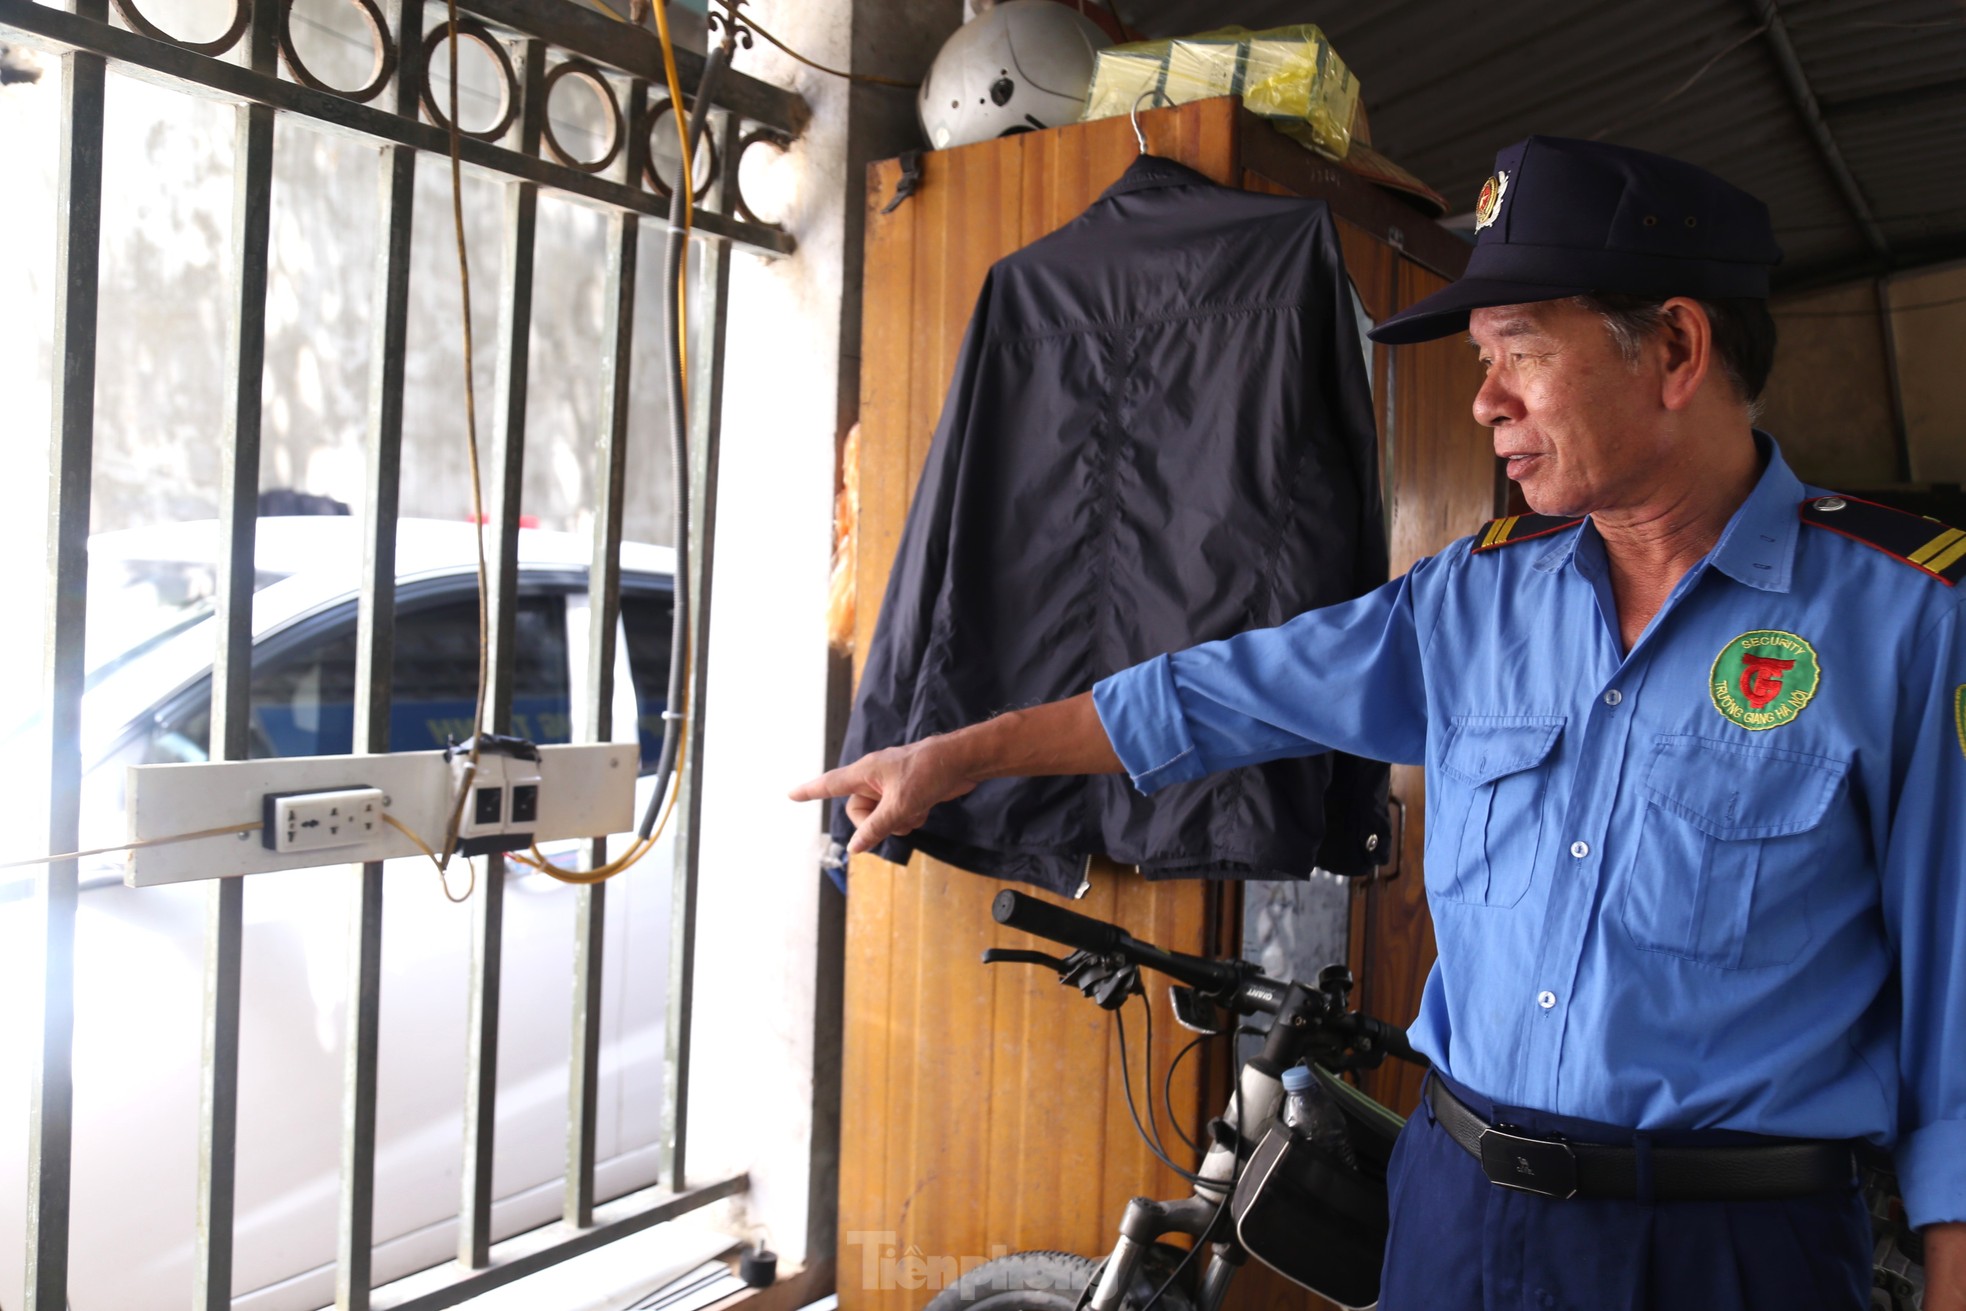 Nhiều chung cư ở Nghệ An bố trí điểm sạc xe điện riêng, có nơi cấm sạc qua đêm - Ảnh 7.